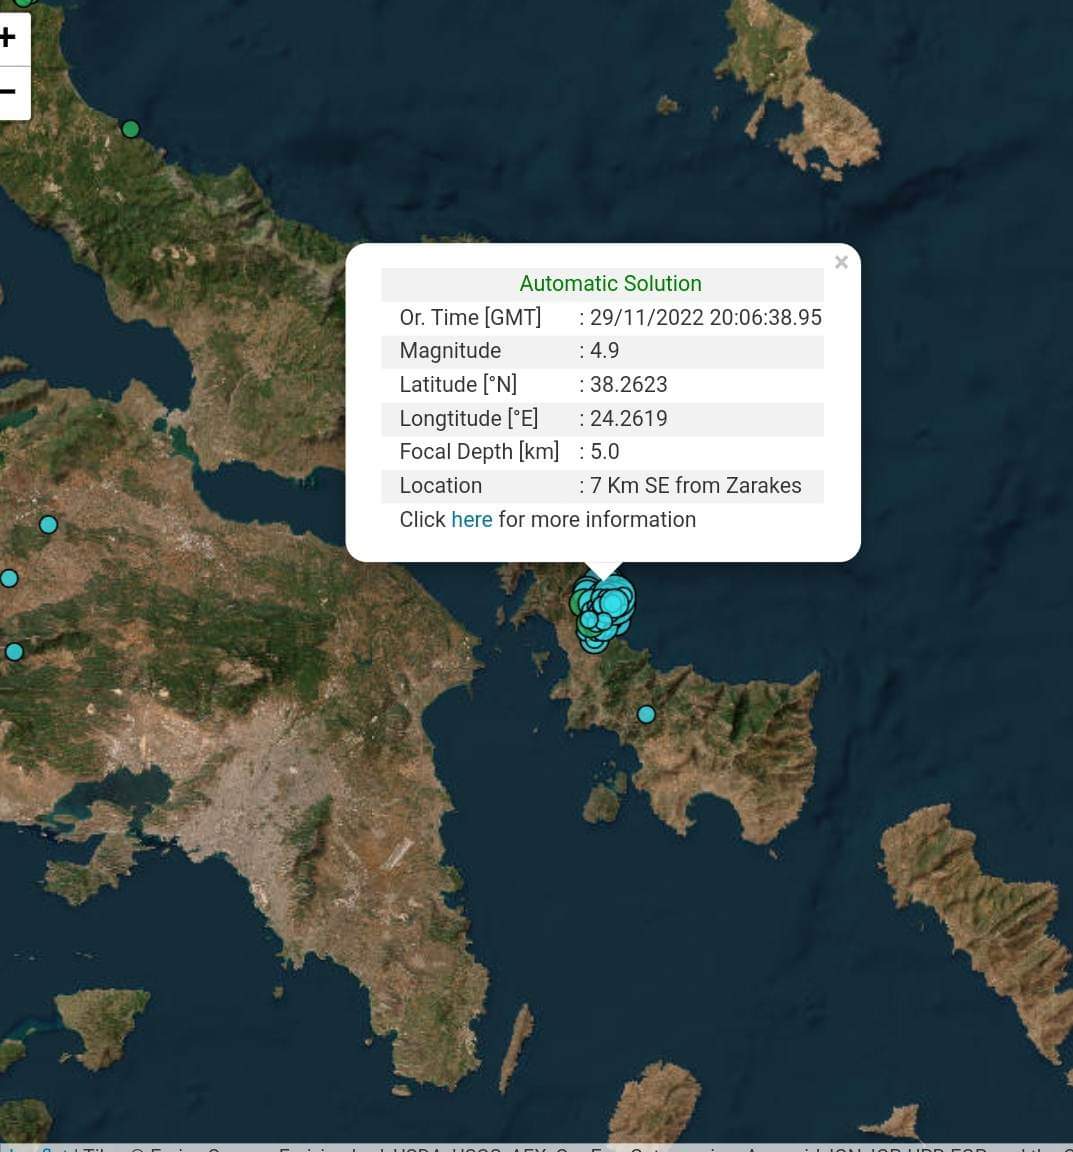 Ισχυρός σεισμός 4,9 στη νότια Εύβοια μεγάλης διάρκειας -Αισθητός στην Αττική